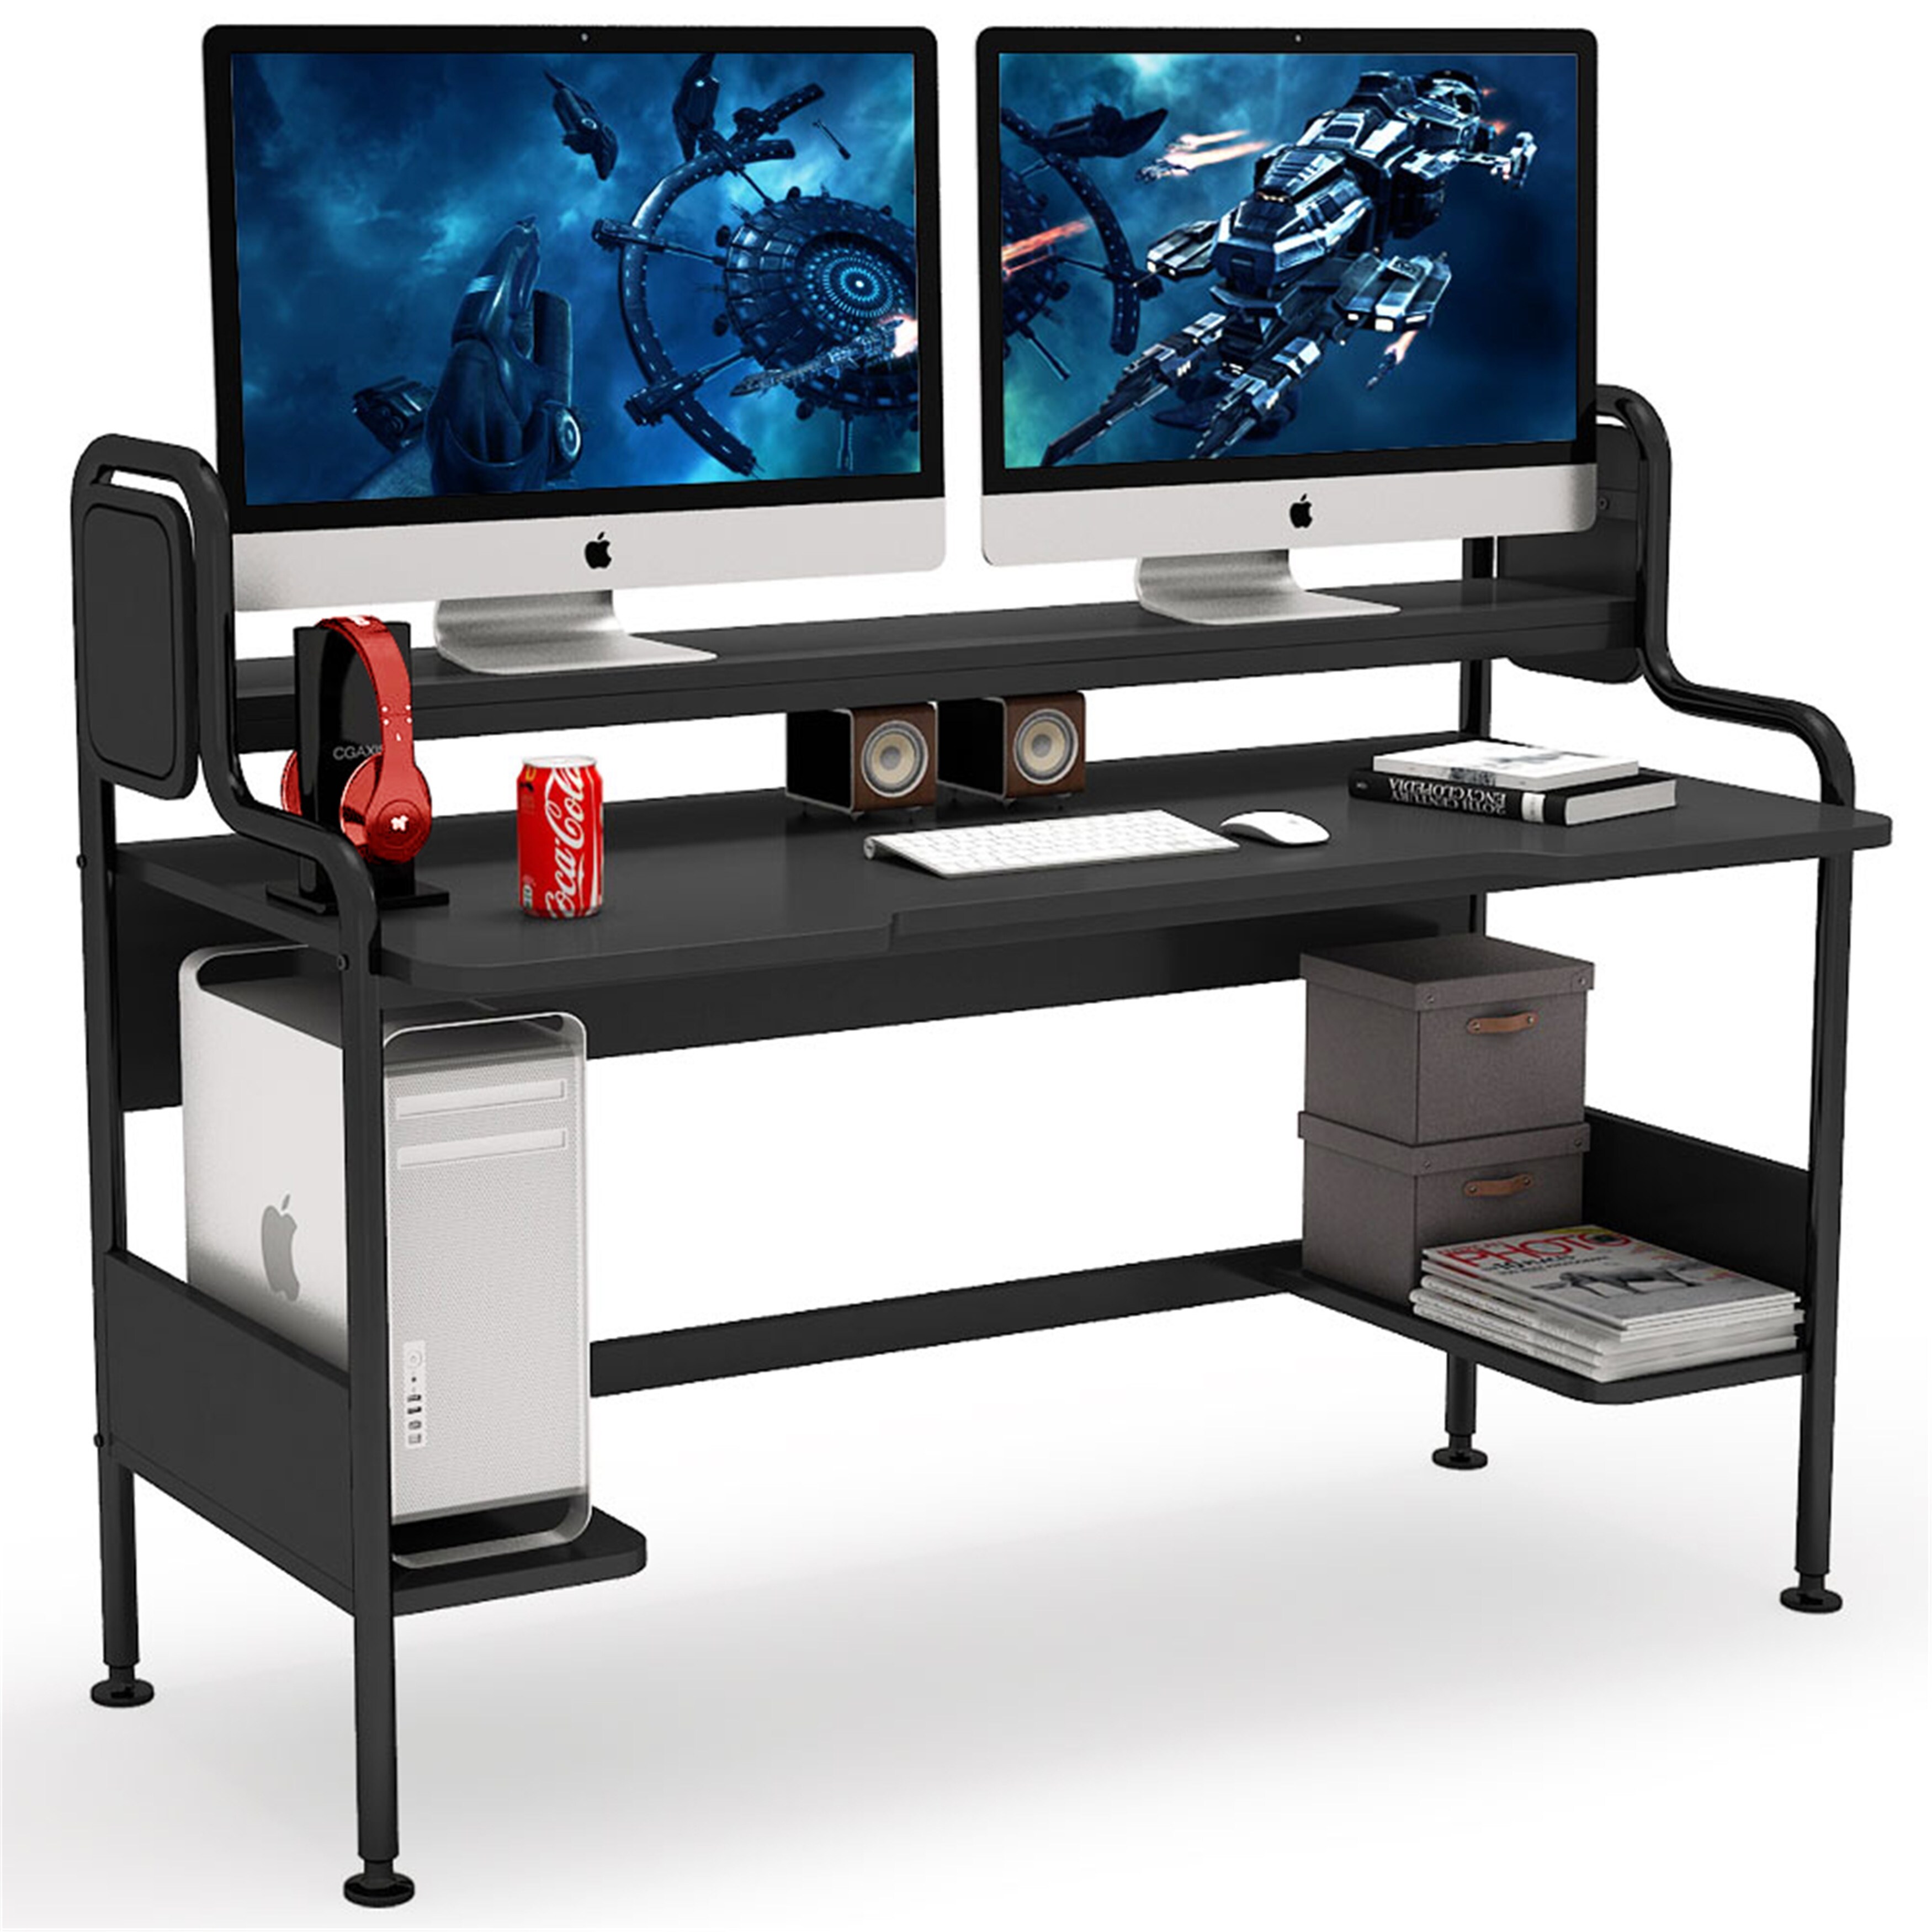 Details about   Gaming Desk 55 inch PC Computer Desk Home Office Desk Table Gamer Workstation 